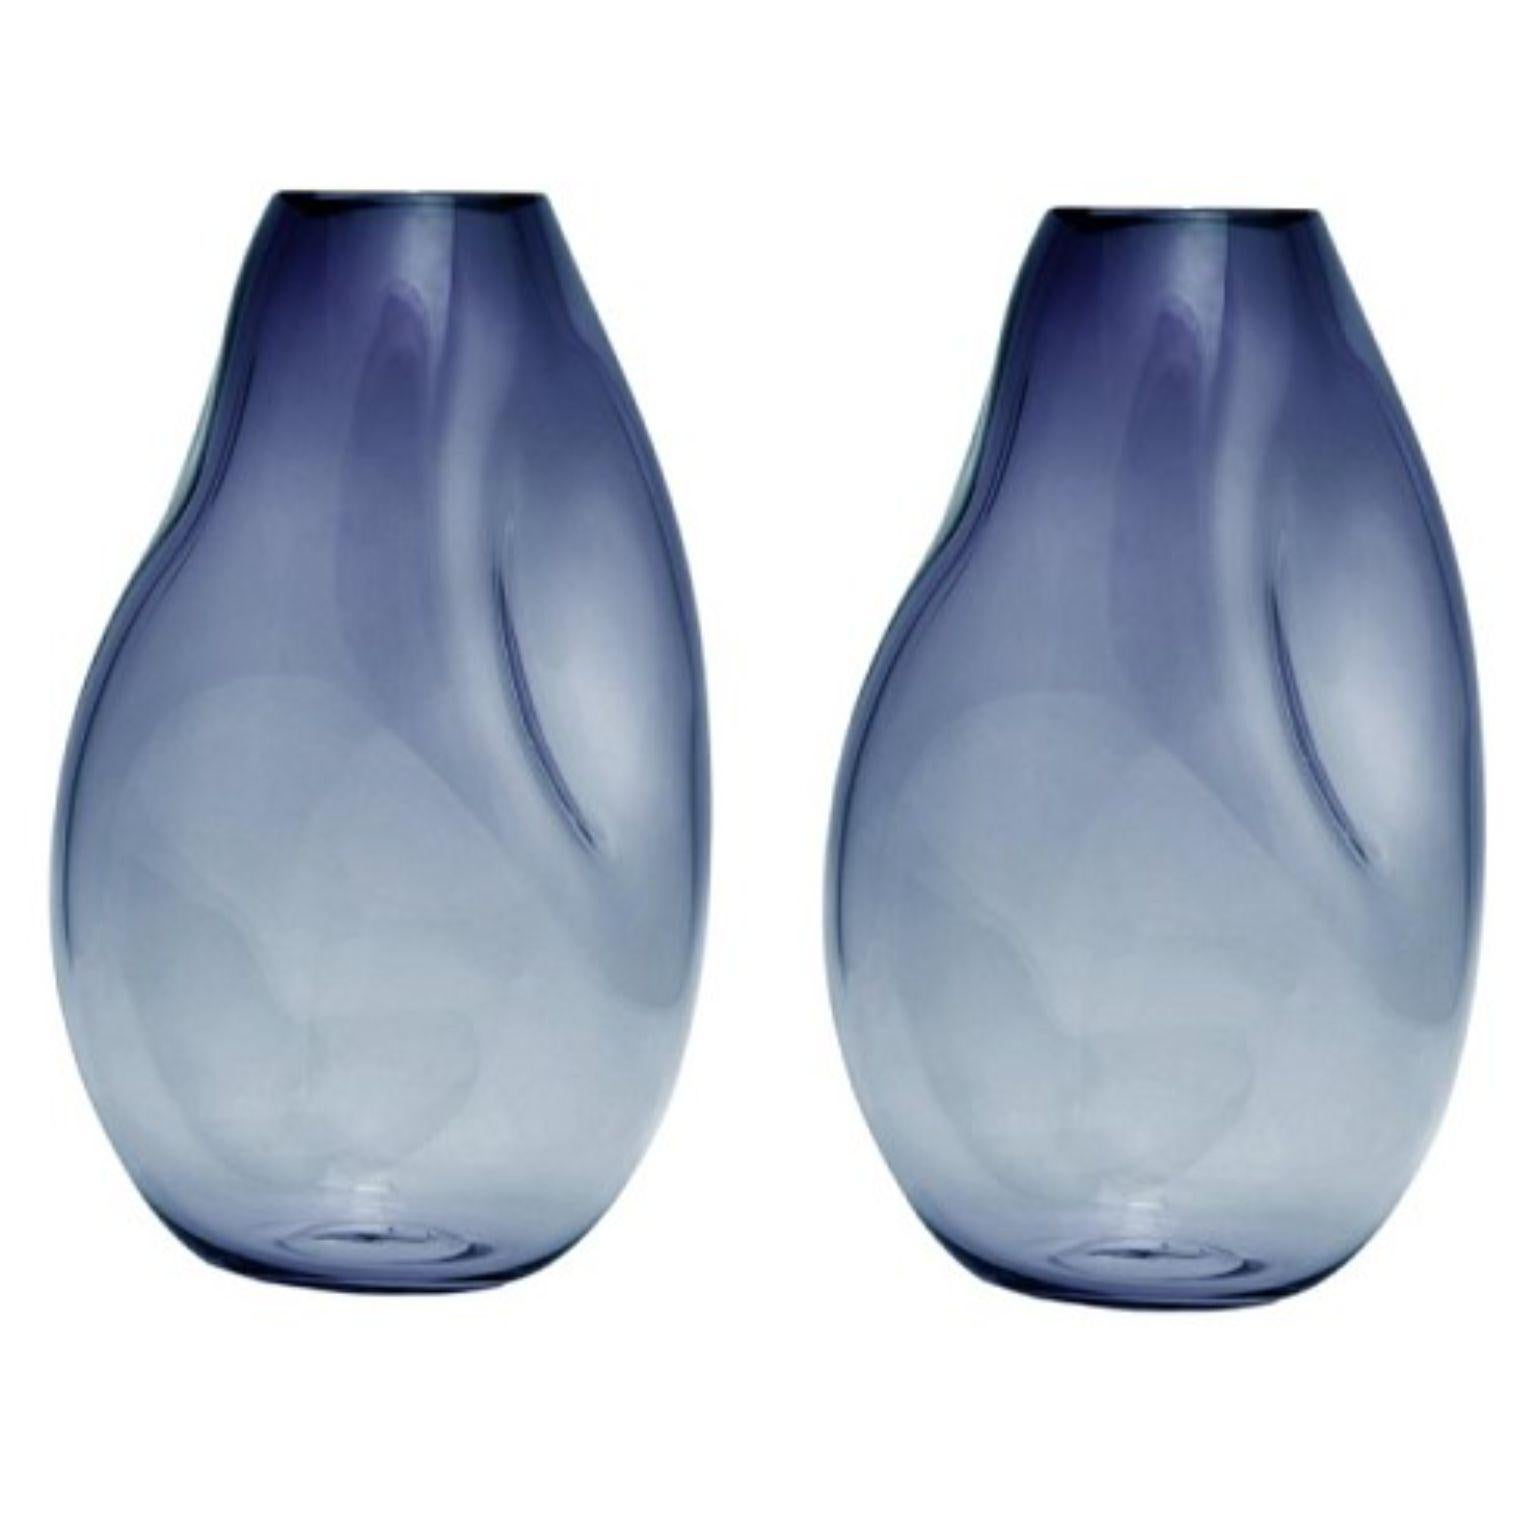 2er-Set Supernova IV Stahlblau L Vasen von Eloa.
Nicht UL-gelistet 
MATERIAL: Glas
Abmessungen: T15 x B17 x H41 cm
Auch in anderen Farben und Abmessungen erhältlich.

SUPERNOVA ist eine Kollektion von Vasen und Schalen, die zwar nicht glänzen, aber